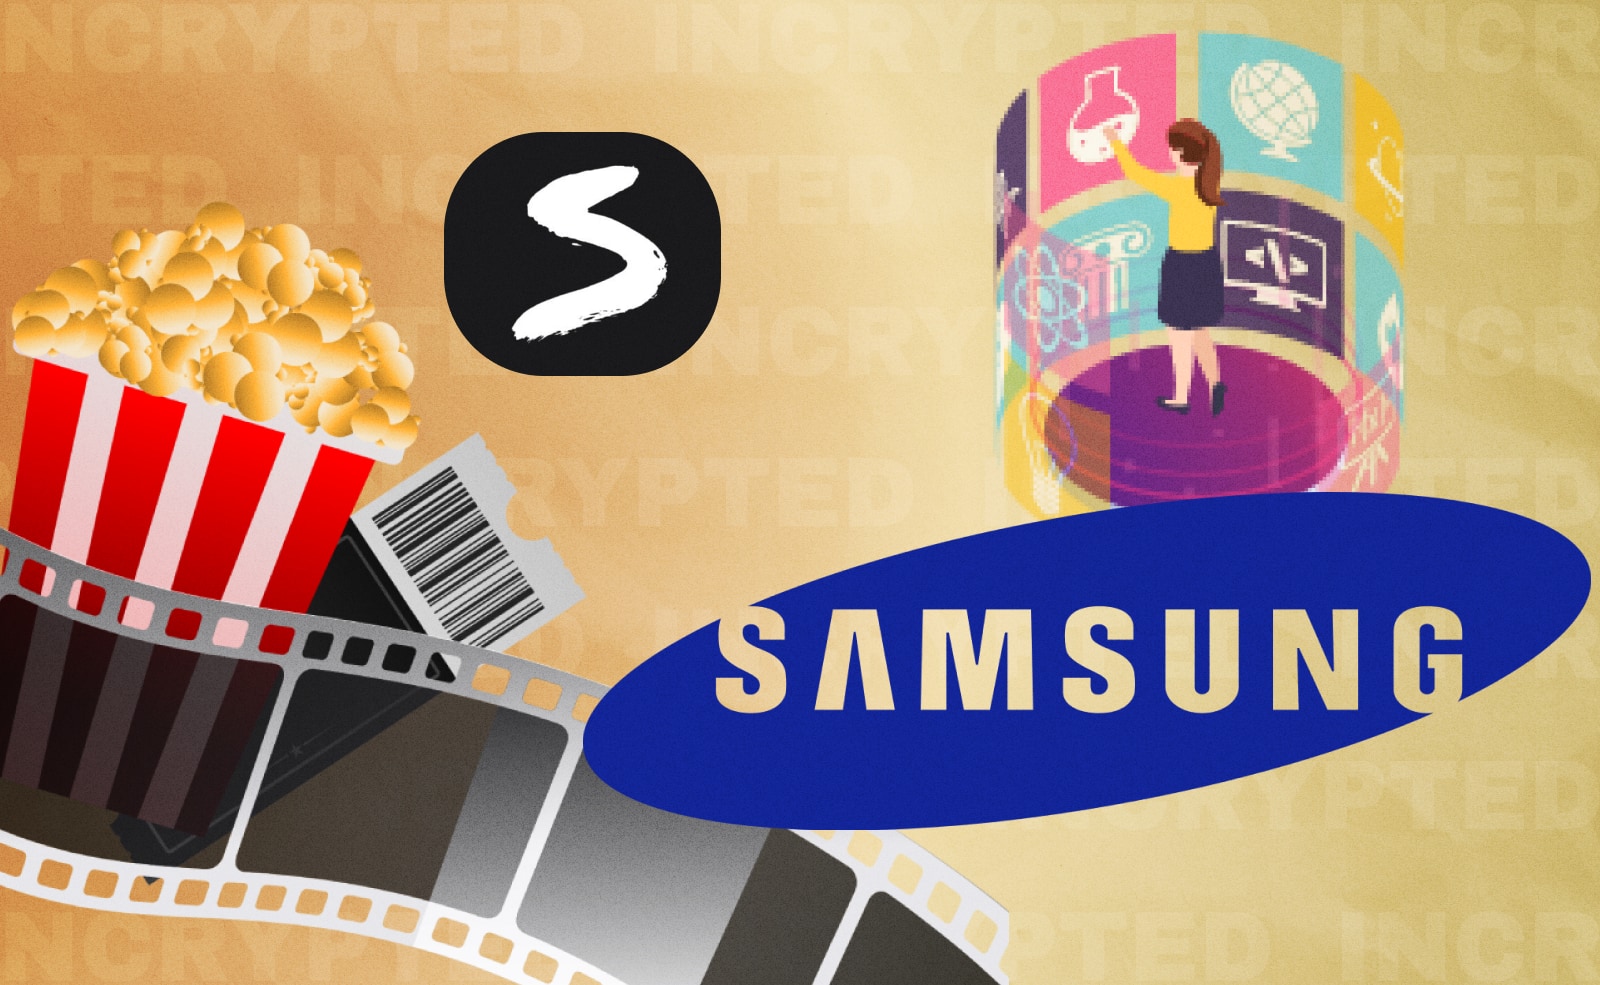 Компания Samsung объединилась с Savage - первым в мире рынком для видео и фото, который работает в сети Polygon. Целью сотрудничества является предоставление клиентам Web3 более качественных продуктов.